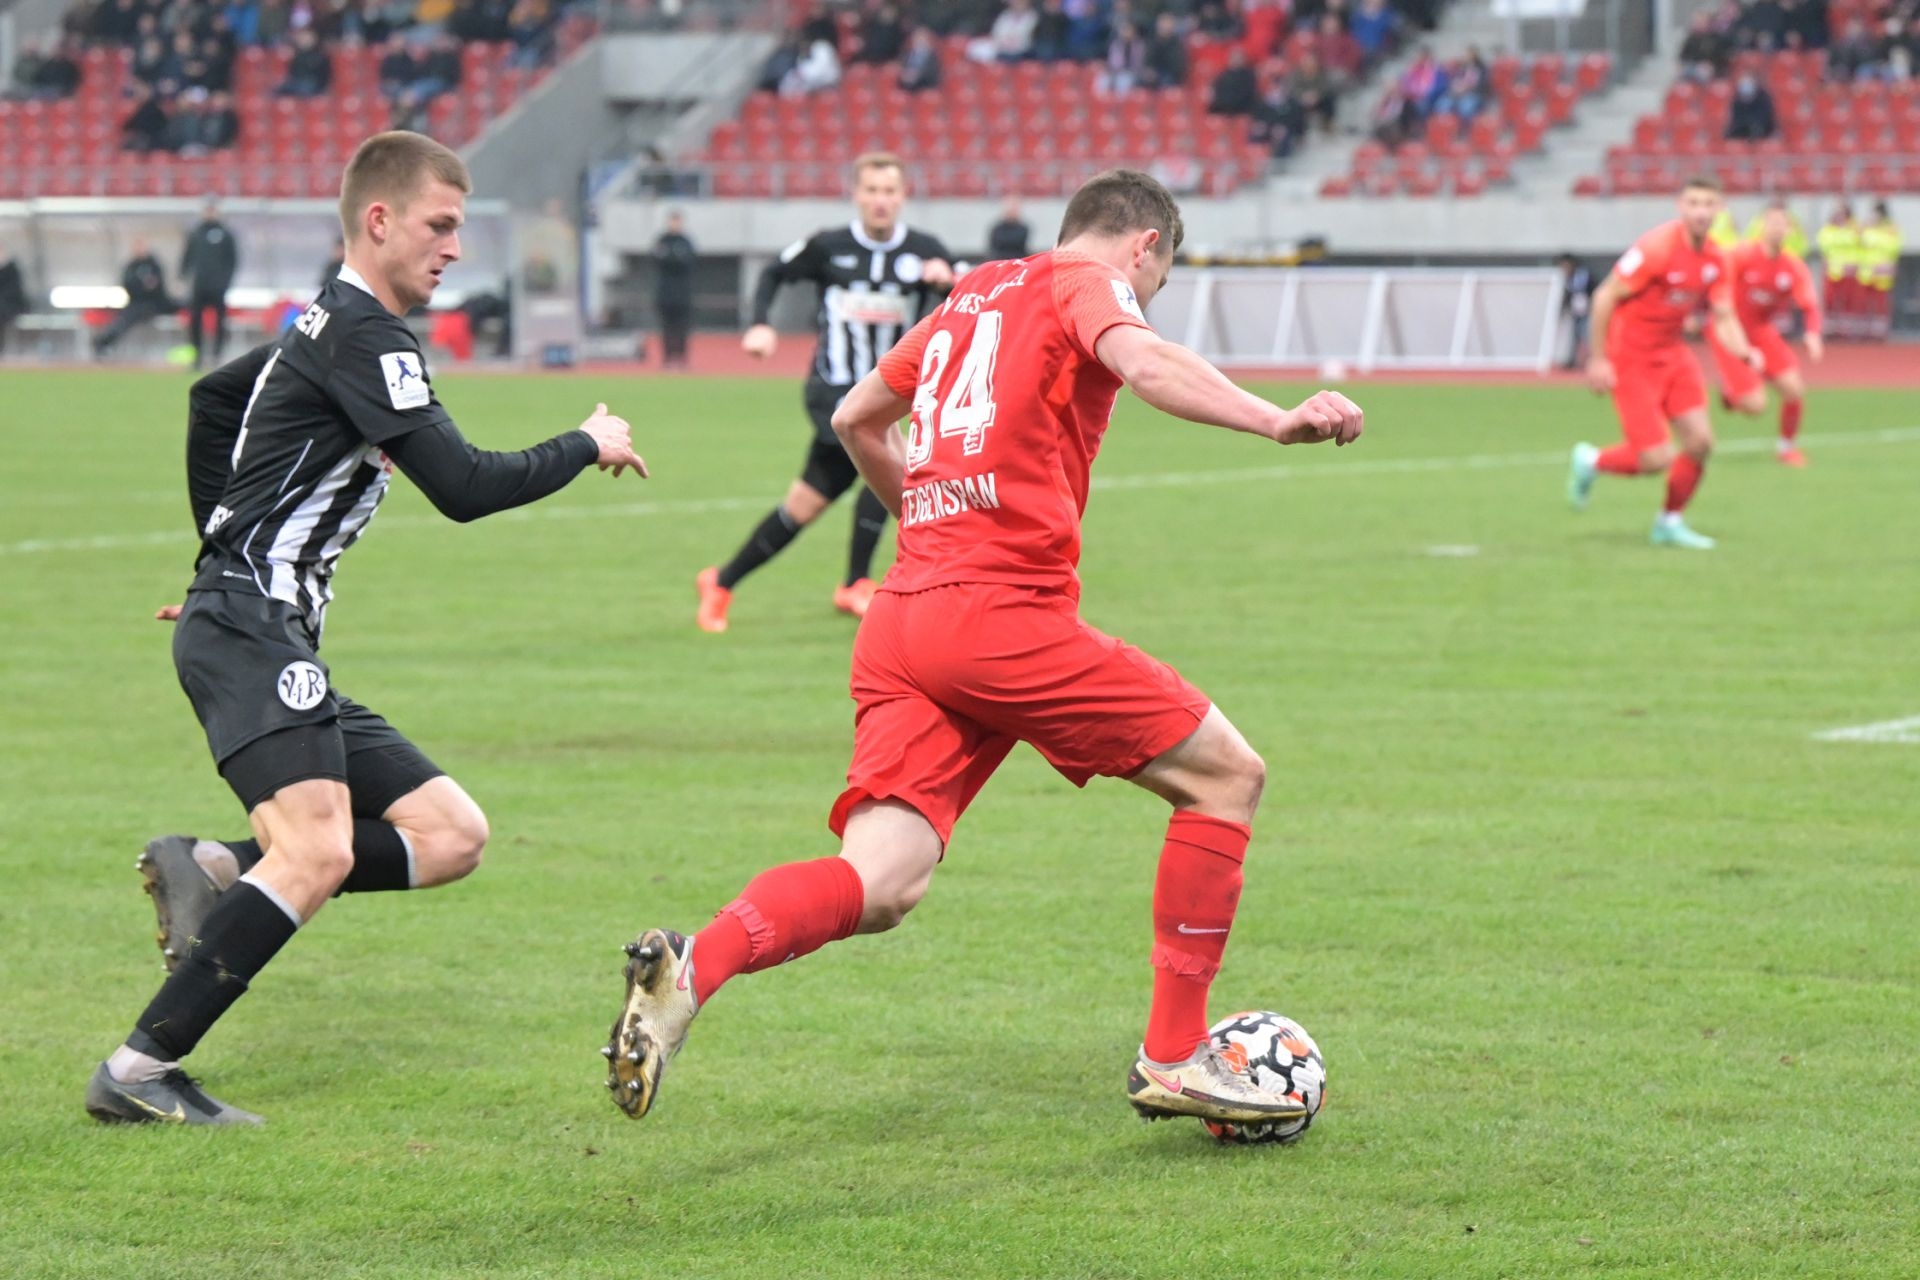 Regionalliga Südwest, Saison 2021/22, KSV Hessen Kassel, VfR Aalen, Endstand 1:2